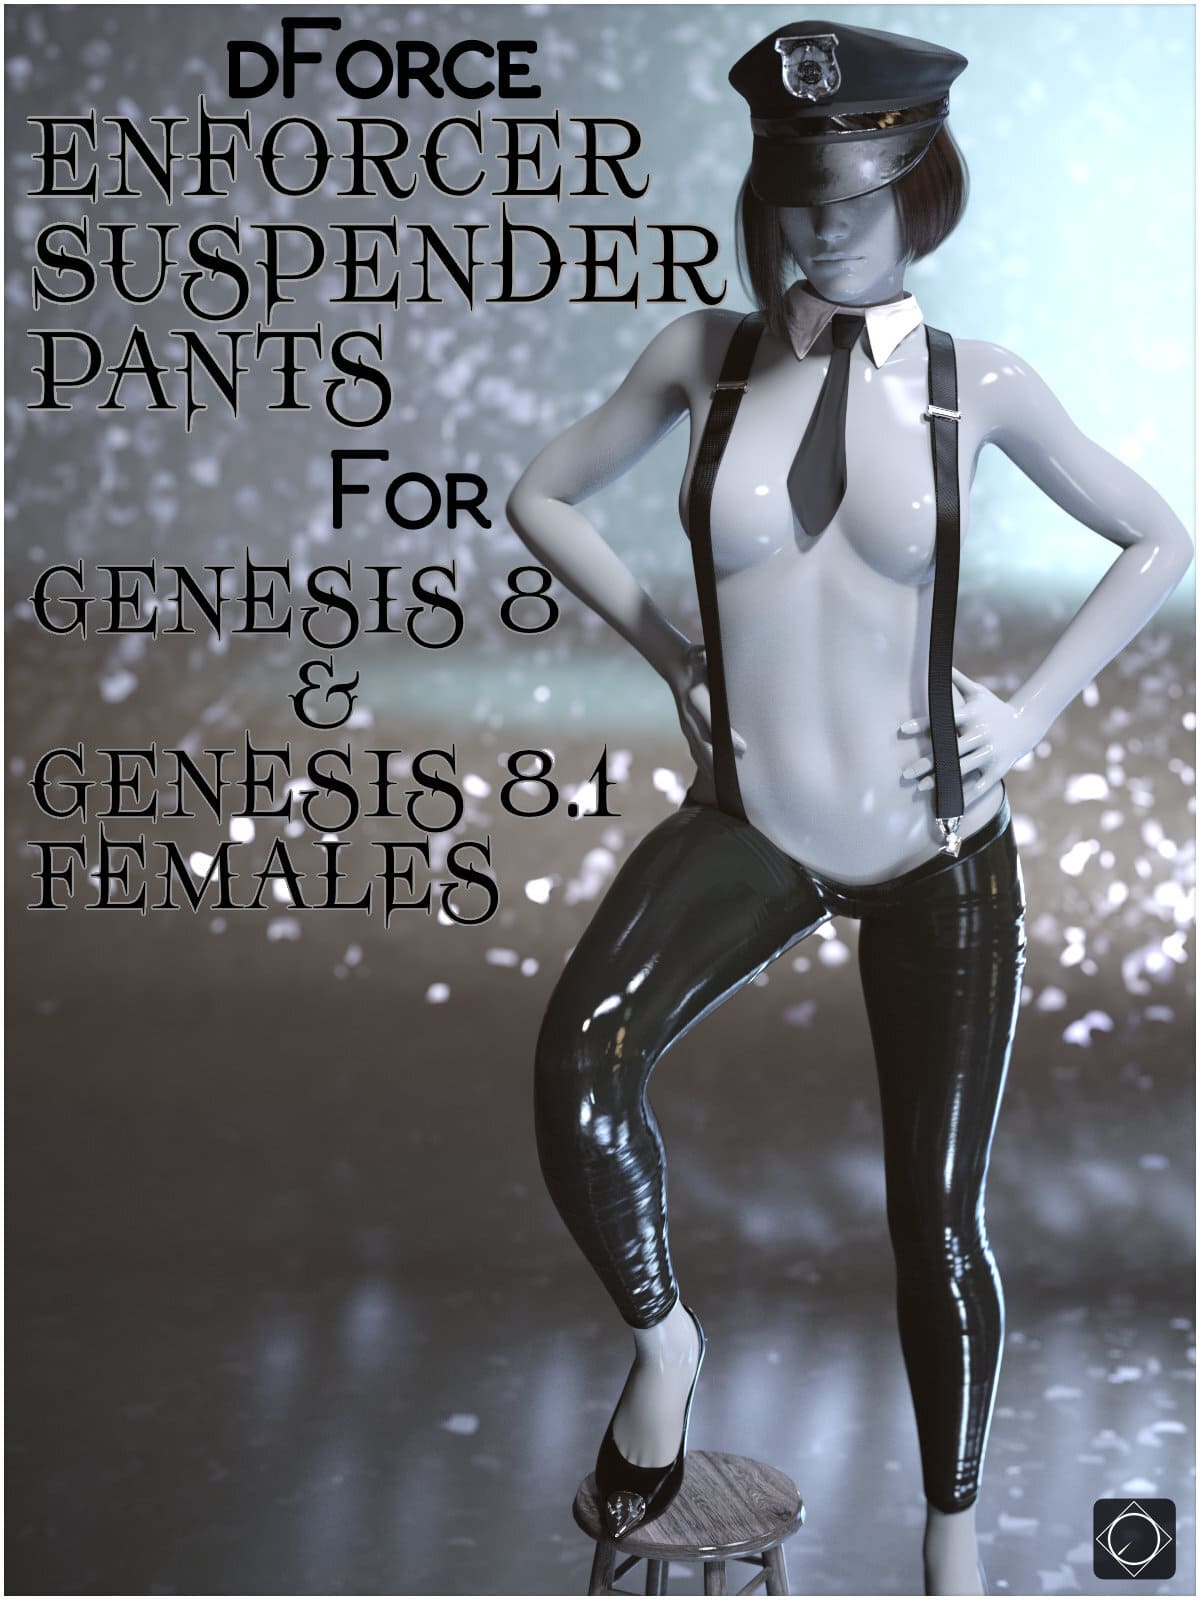 dForce Enforcer Suspender Pants for Genesis 8 and 8.1 Females_DAZ3DDL